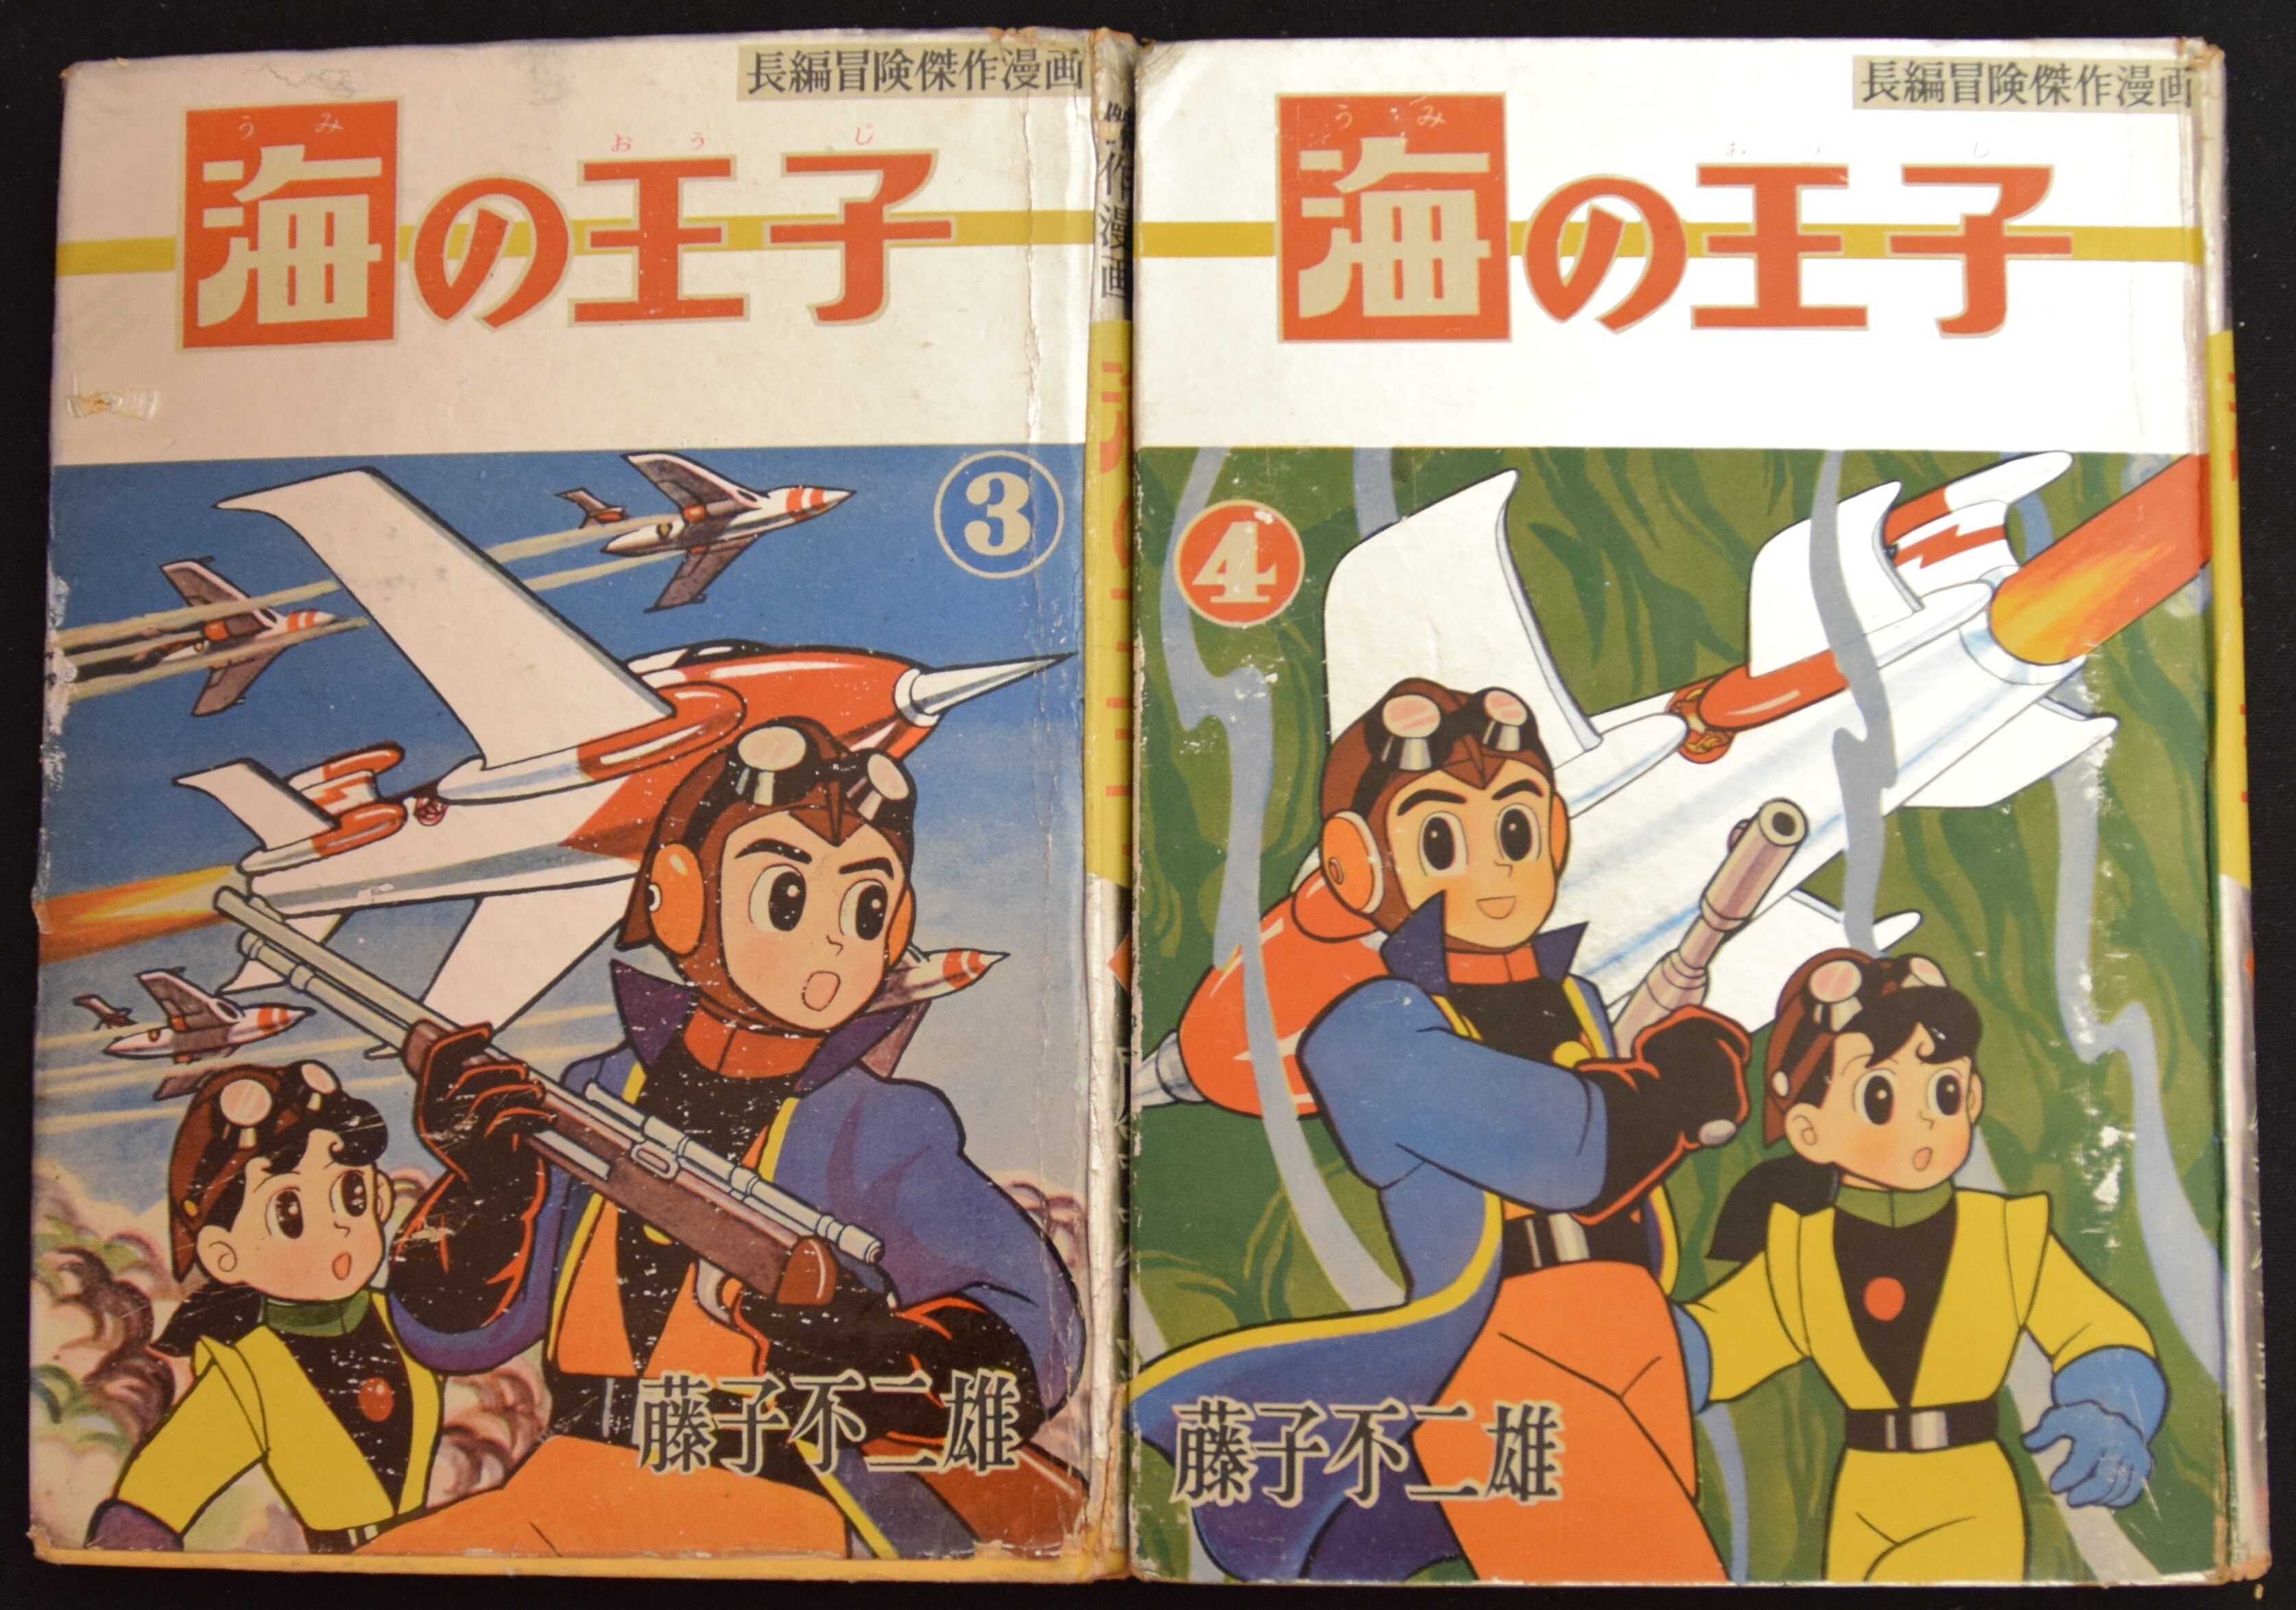 長編冒険漫画 海の王子1 藤子不二雄 藤子印付き 昭和53年発行 1960+ 